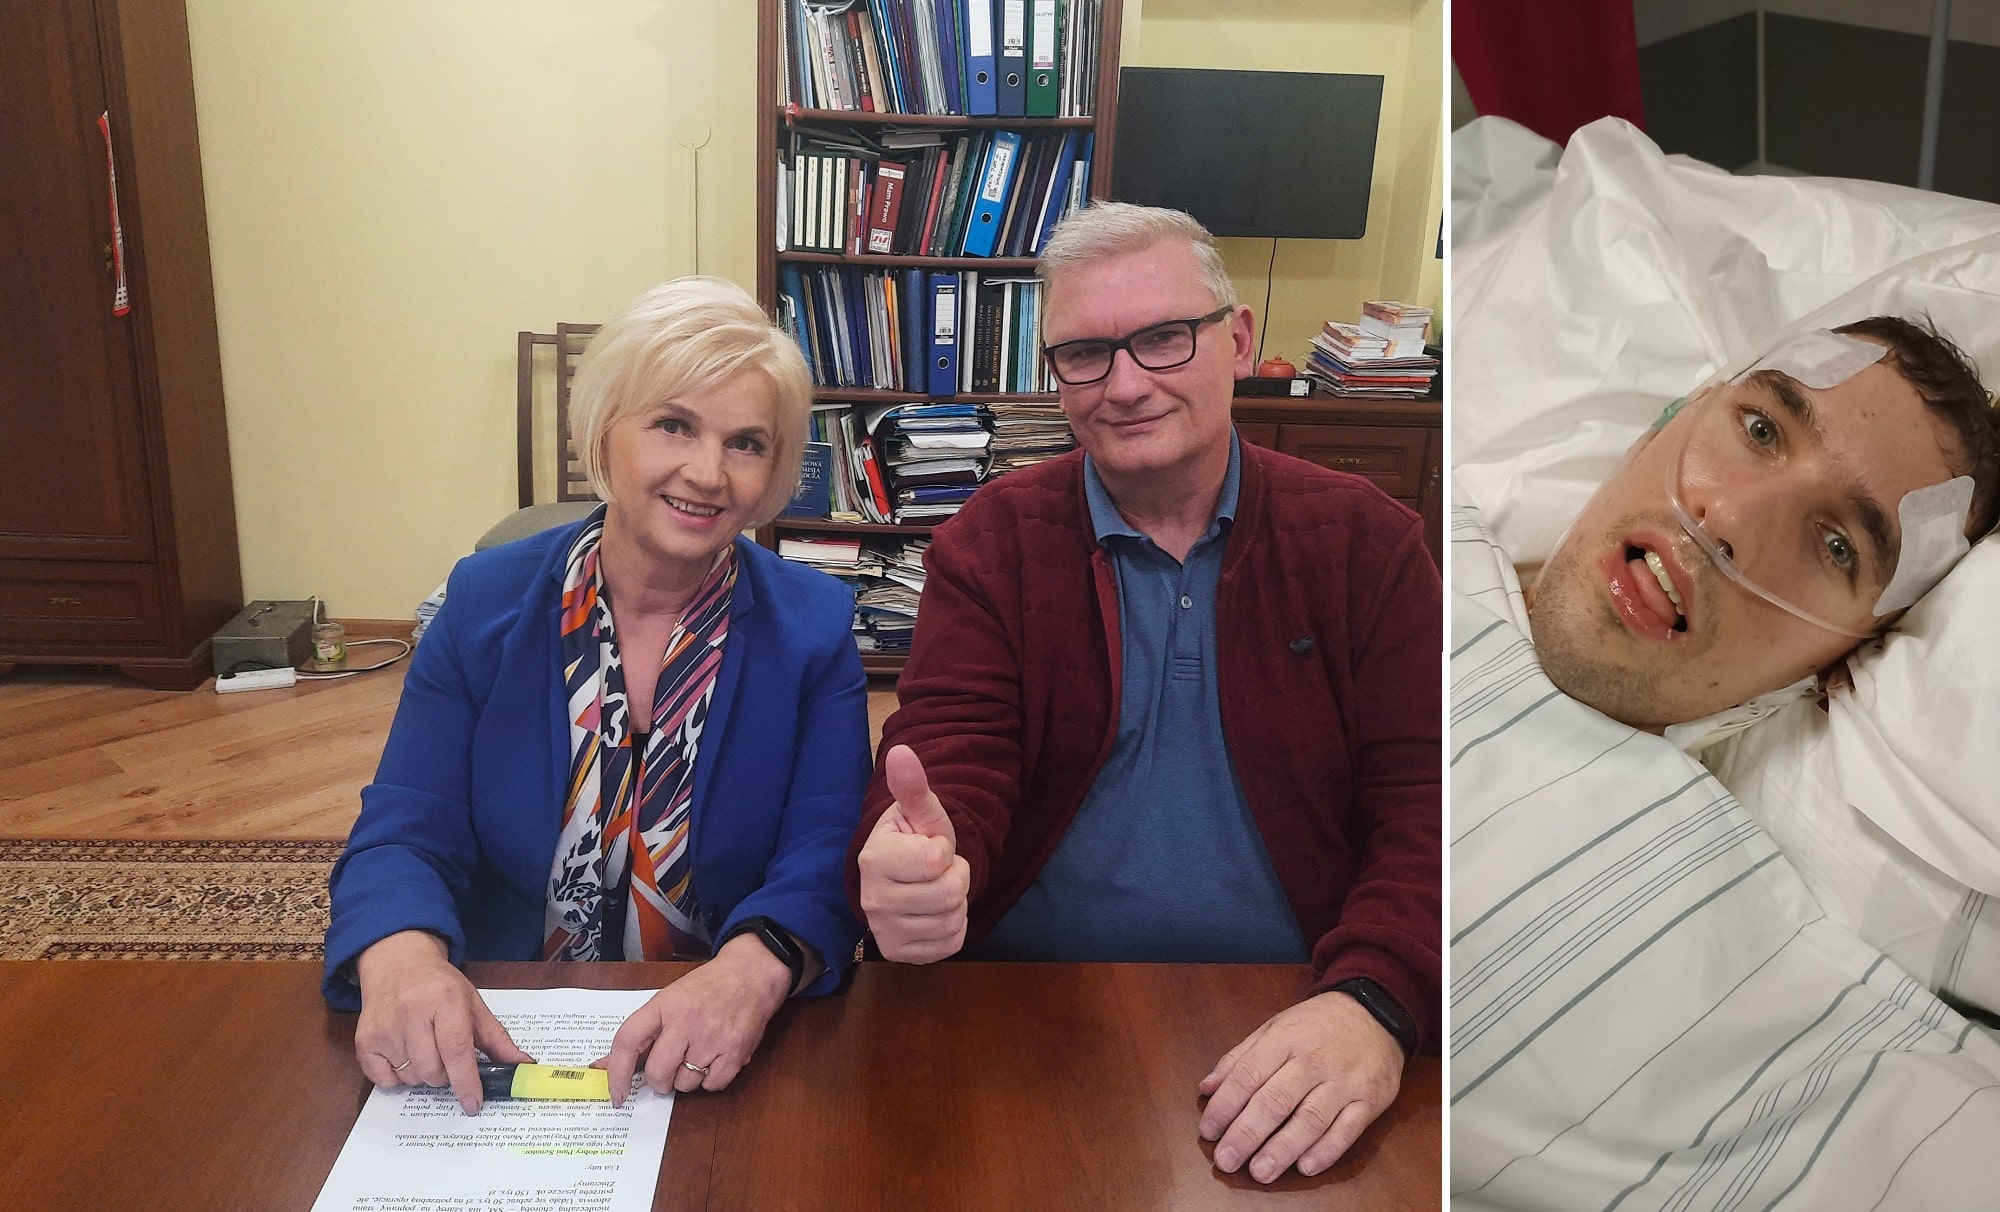 Walczący z chorobą Filip z Olsztyna ma szansę na nowe życie. Senator Staroń prosi o wsparcie zdrowie Olsztyn, Wiadomości